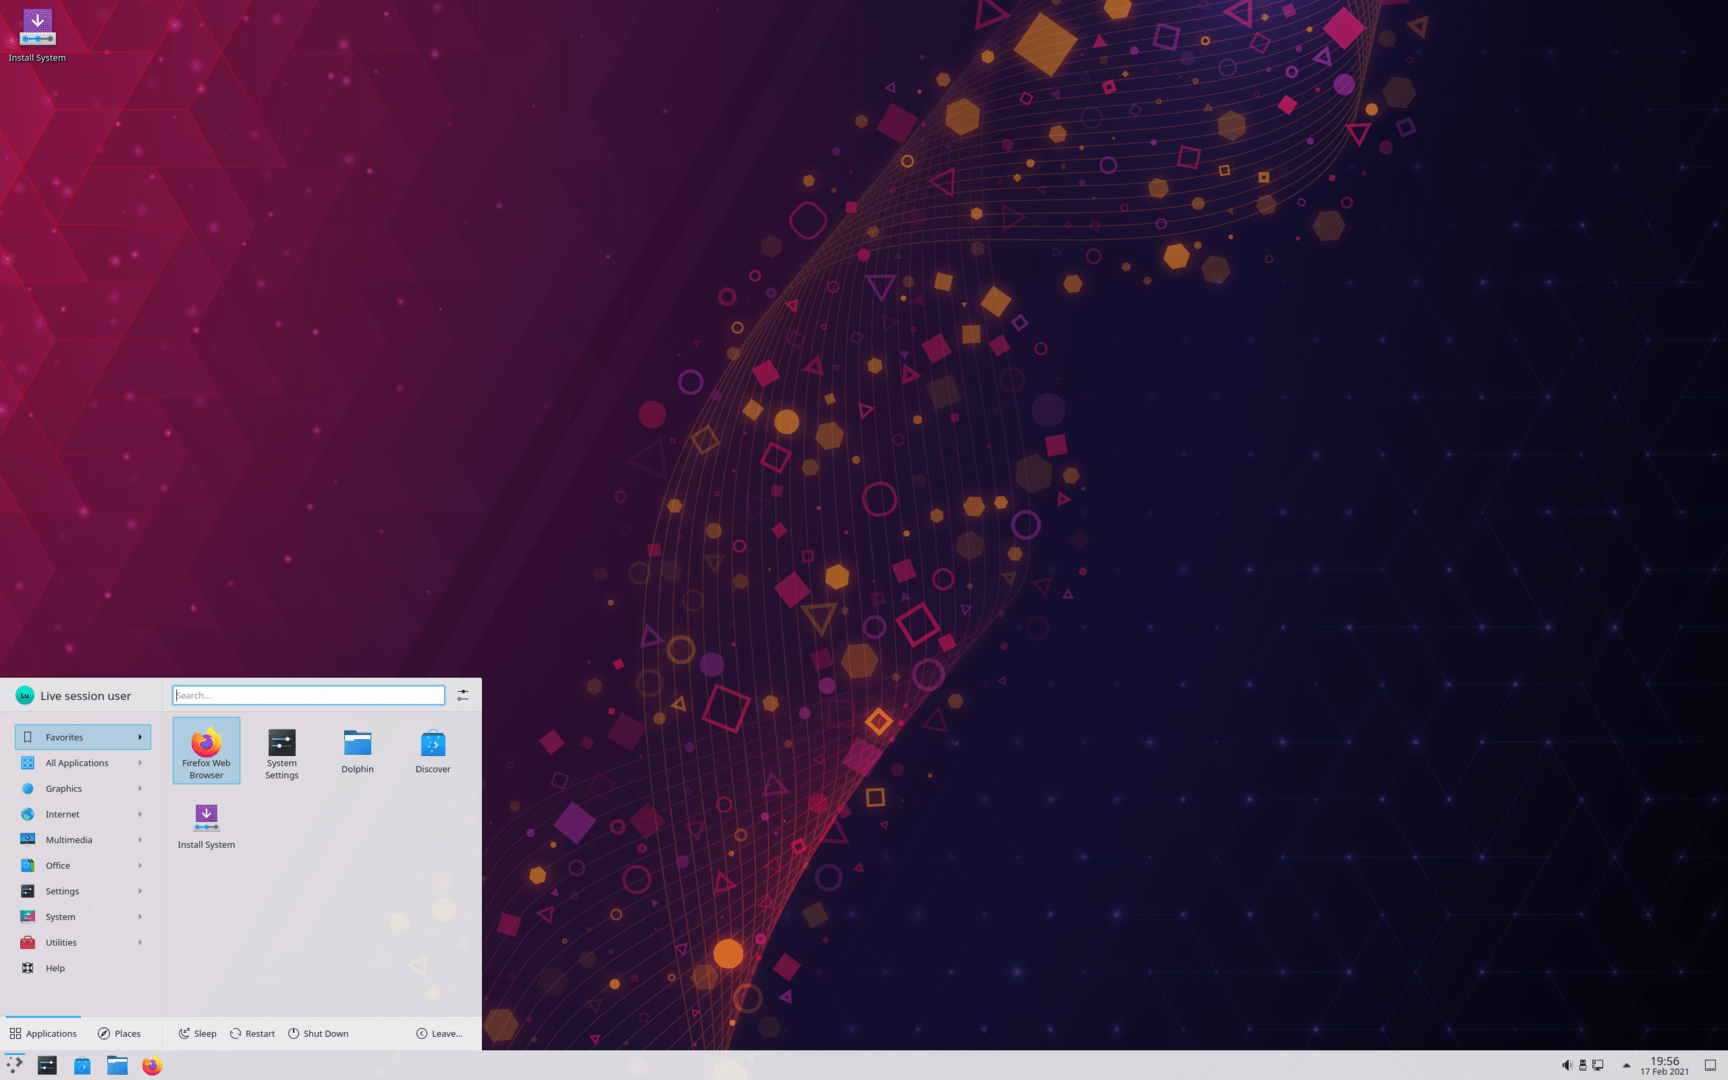 KDE Plasma 5.21.1